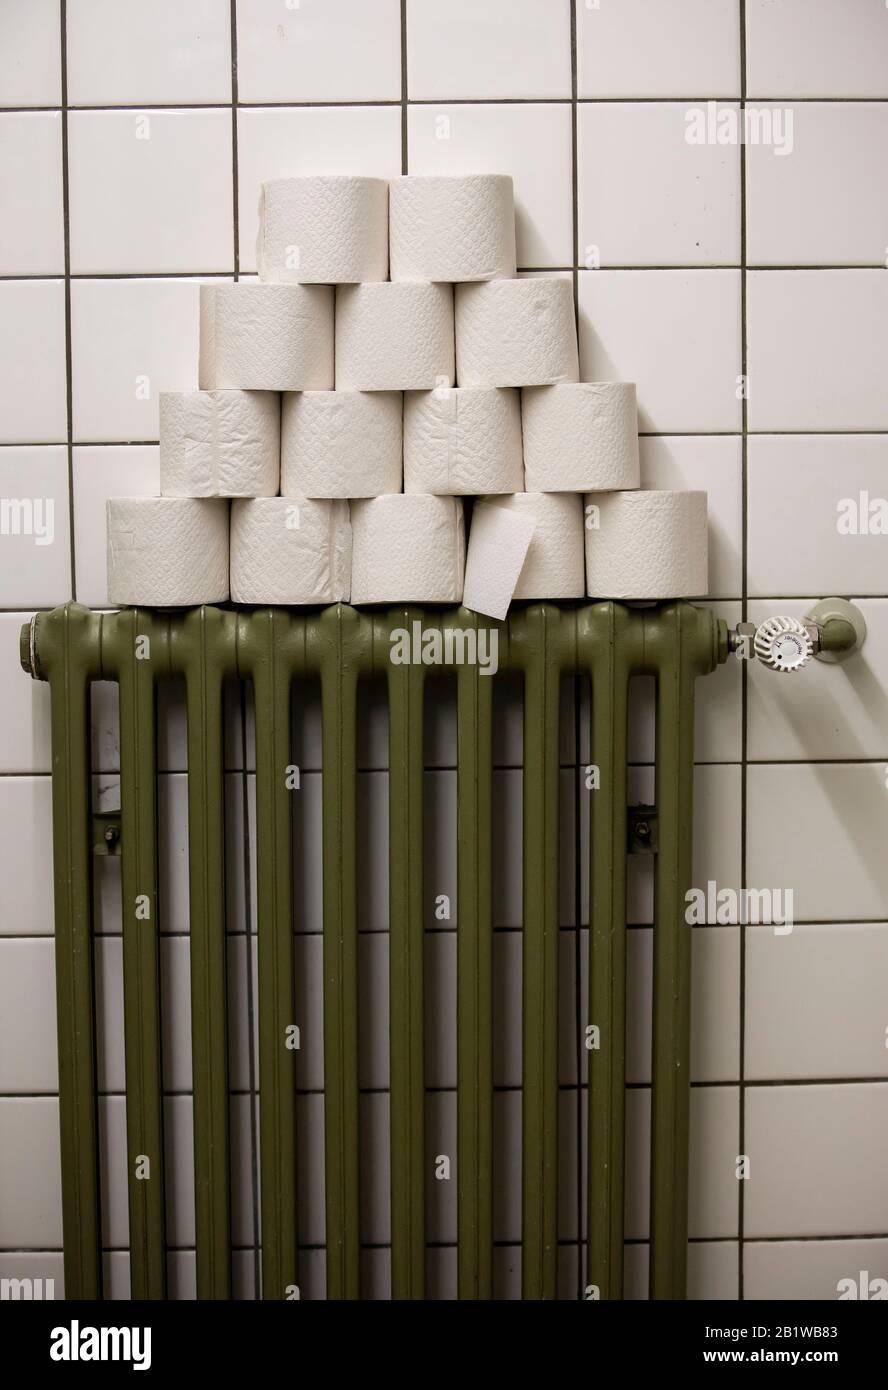 Rouleaux de papier toilette empilés sur un radiateur, dans des toilettes publiques Banque D'Images